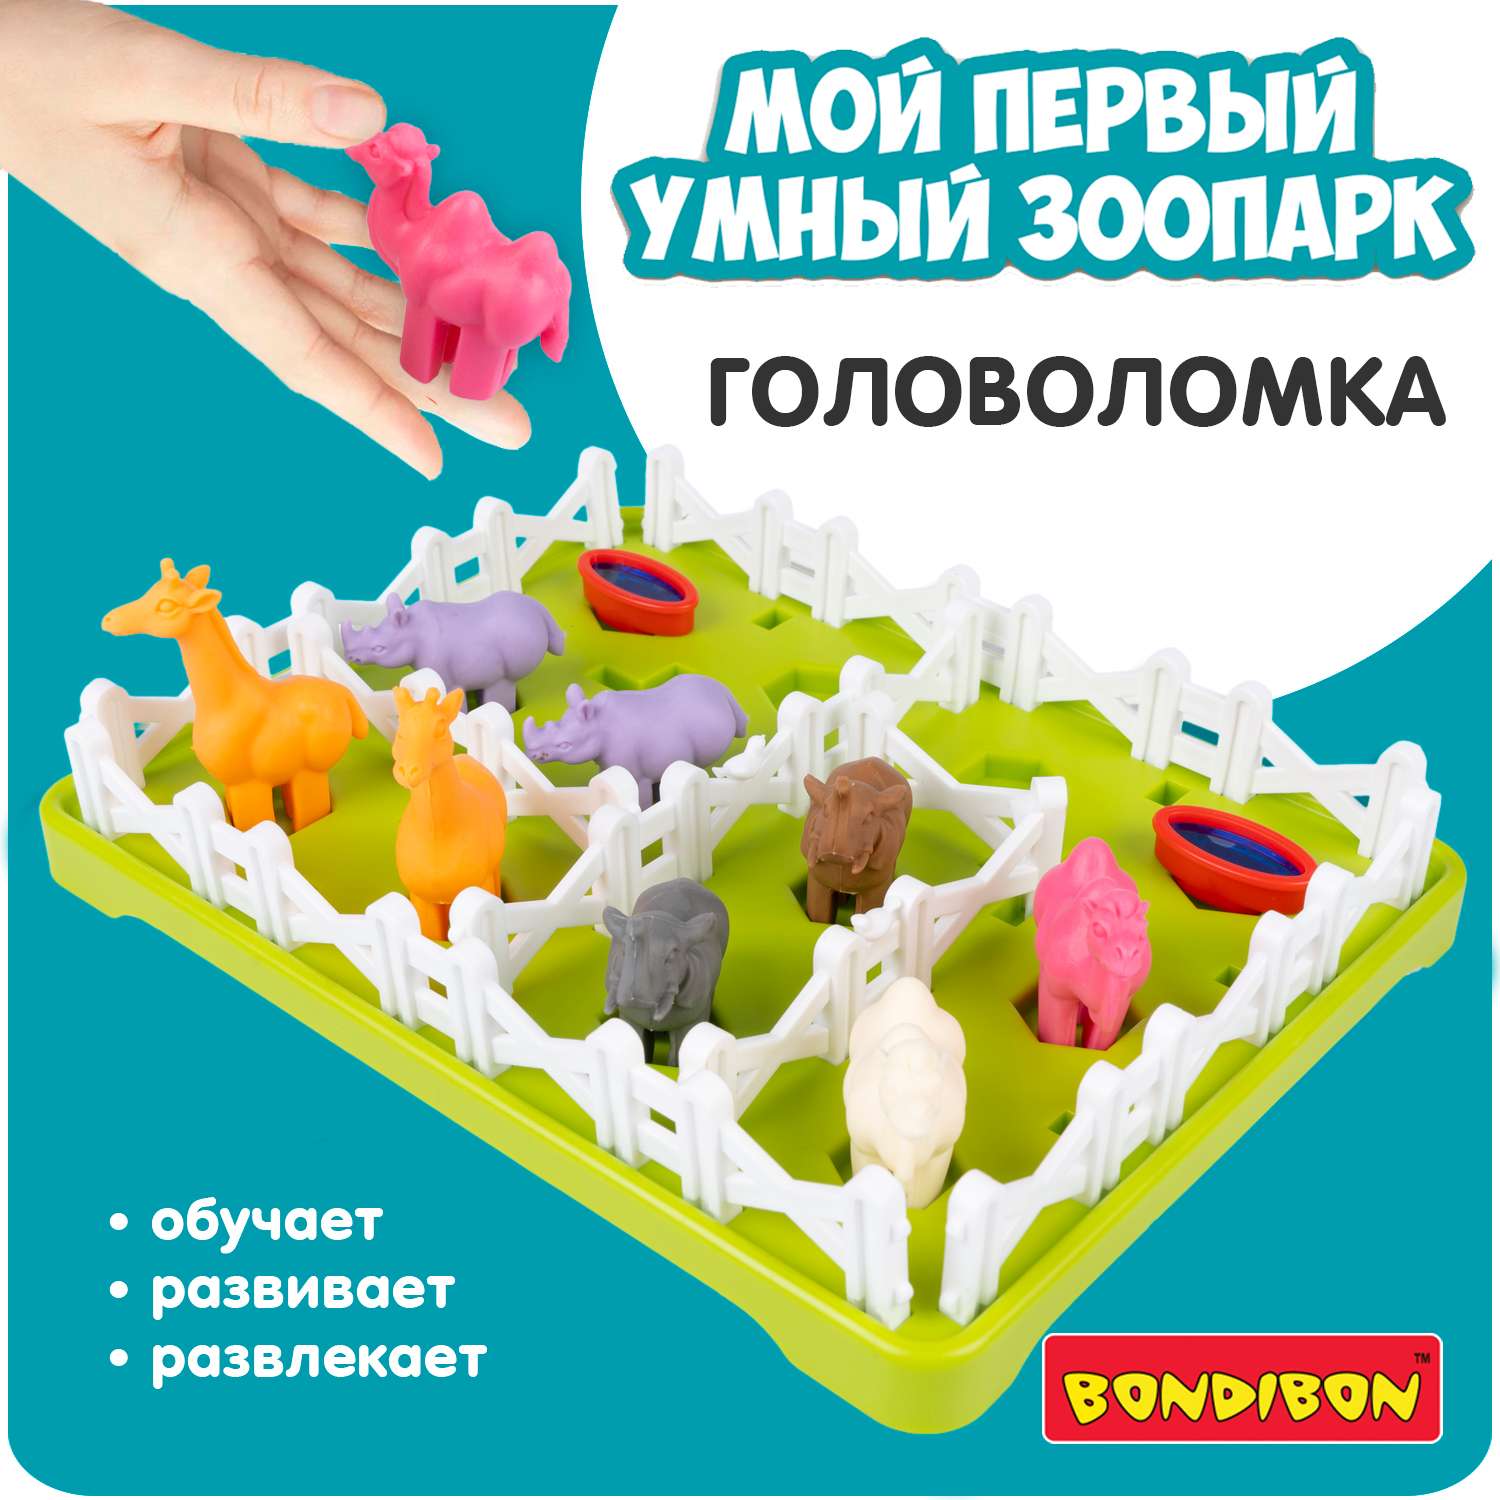 Настольная логическая игра BONDIBON головоломка Мой первый Умный зоопарк серия БондиЛогика - фото 1